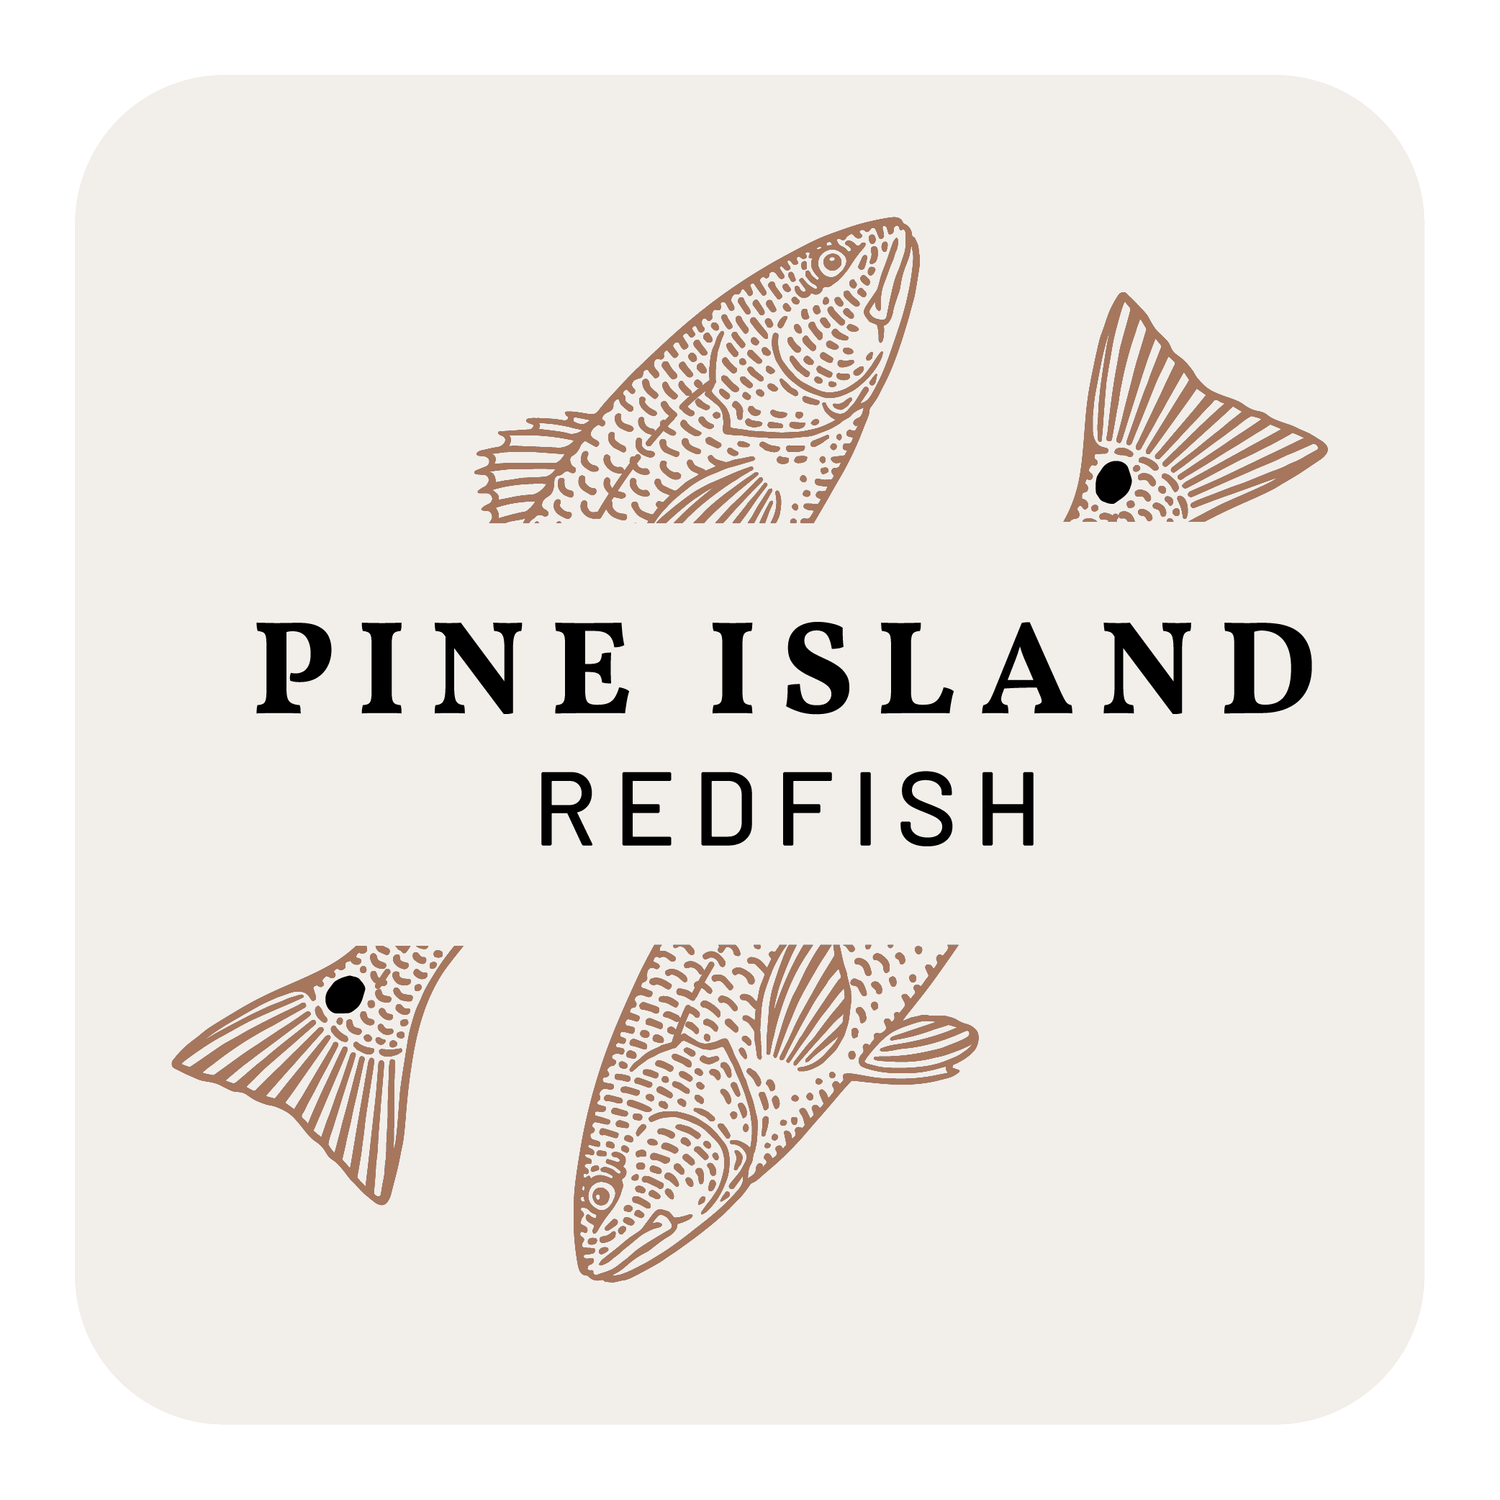 Pine Island Redfish